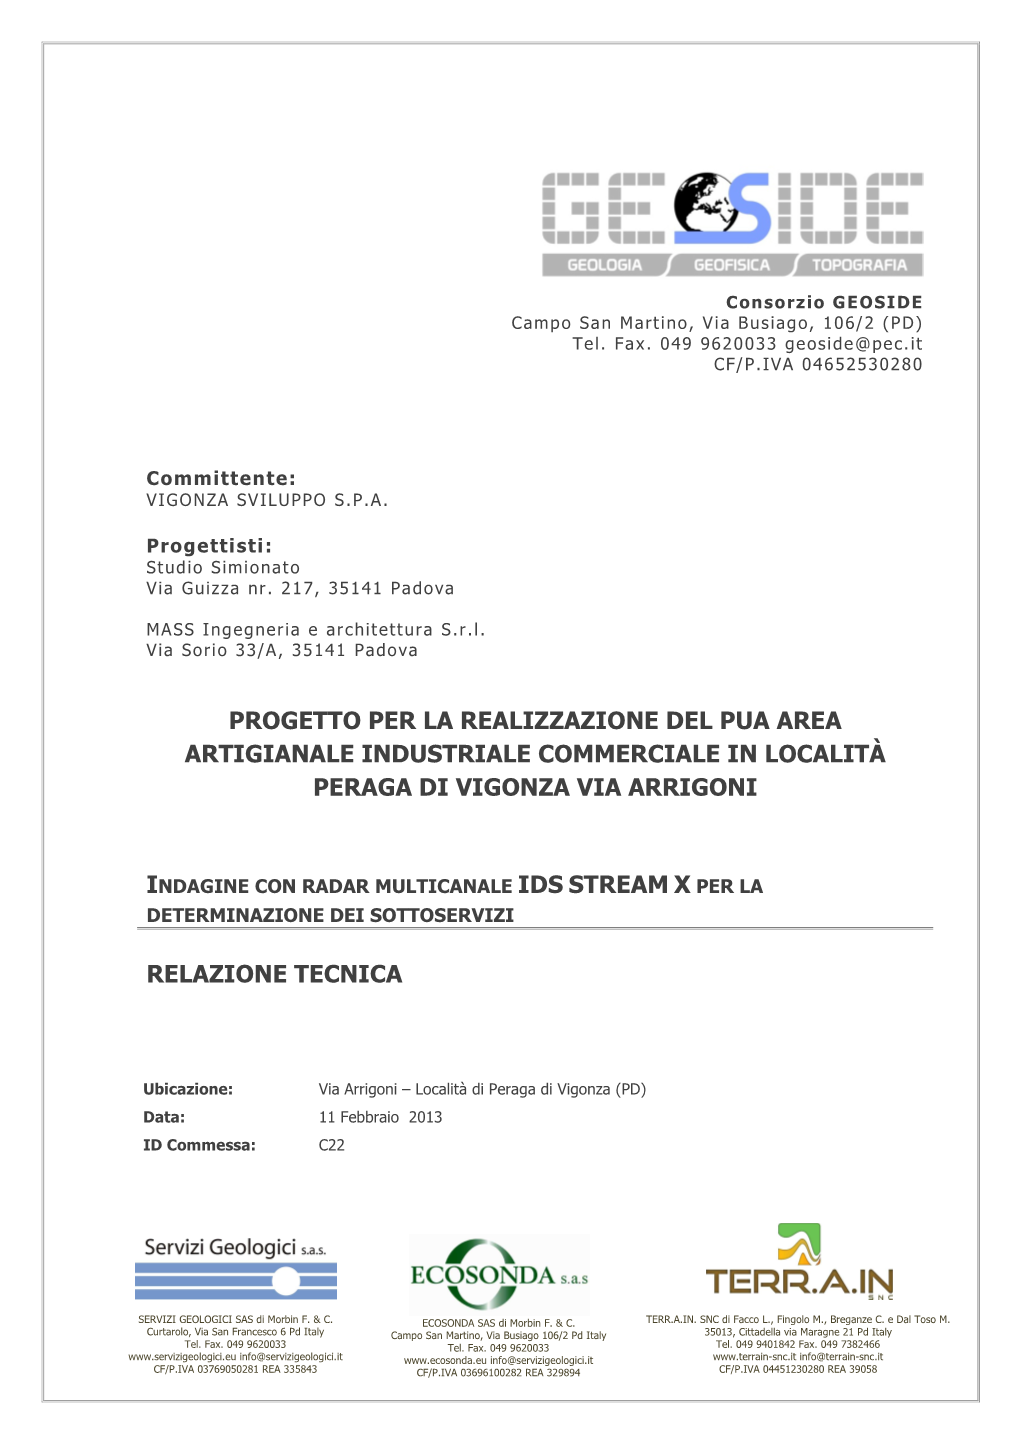 Progetto Per La Realizzazione Del Pua Area Artigianale Industriale Commerciale in Località Peraga Di Vigonza Via Arrigoni